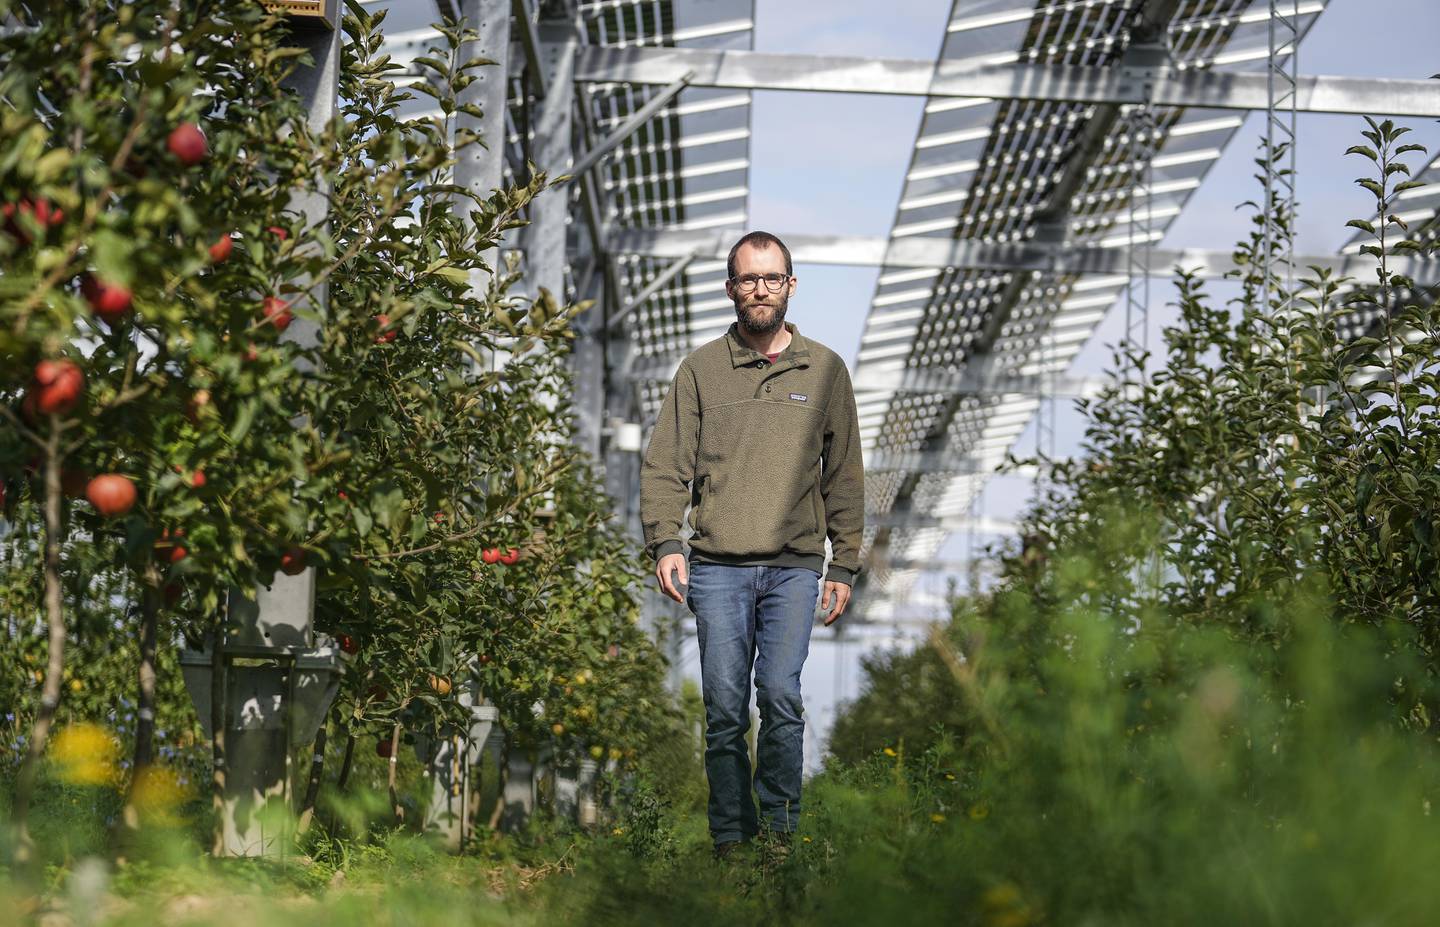 Epletrærne til Christian Nachtwey trives godt under taket av solcellepaneler. Foto: Martin Meissner / AP / NTB